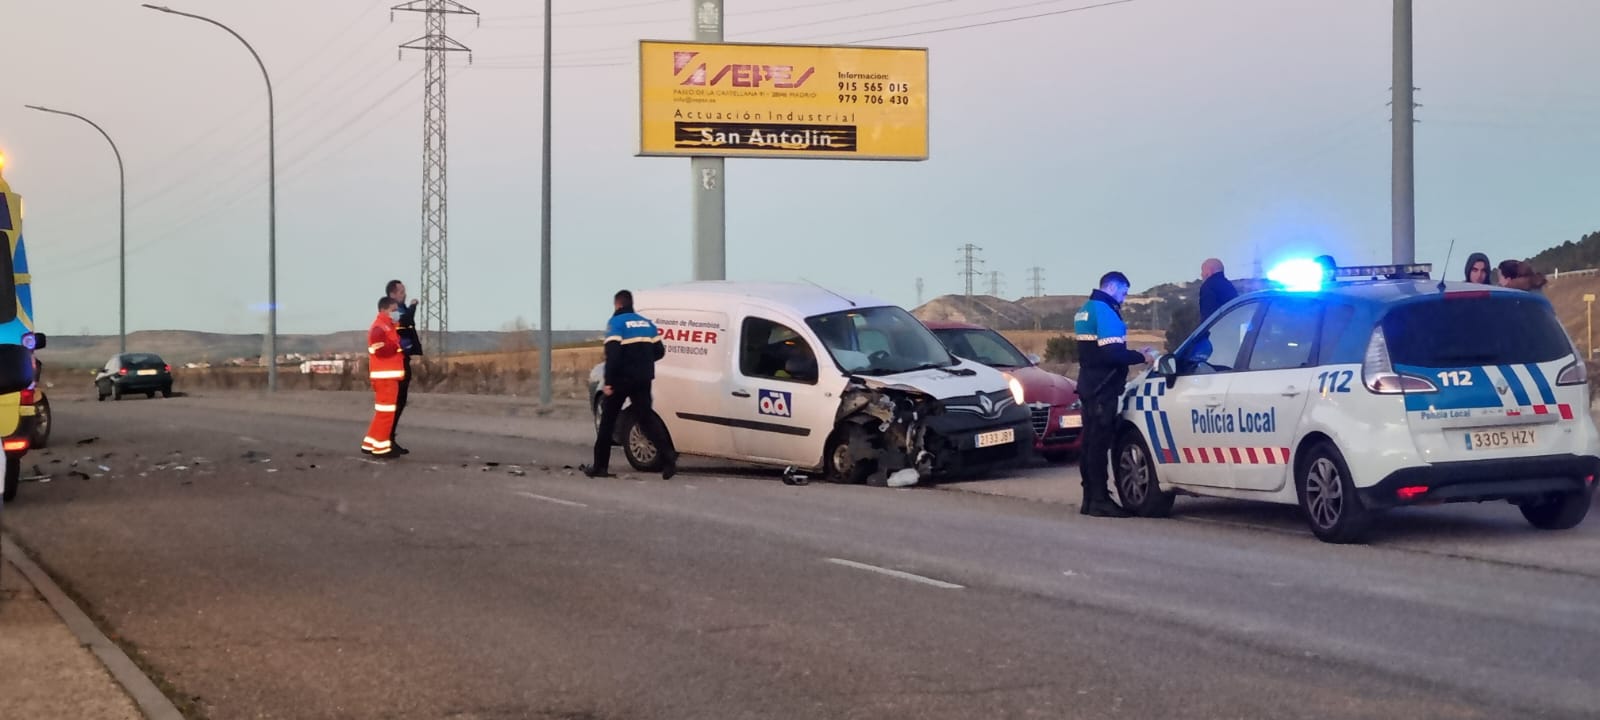 Accidente-múltiple-con-herido-Palencia-furgoneta-contra-todoterreno-luego-contra-turismo